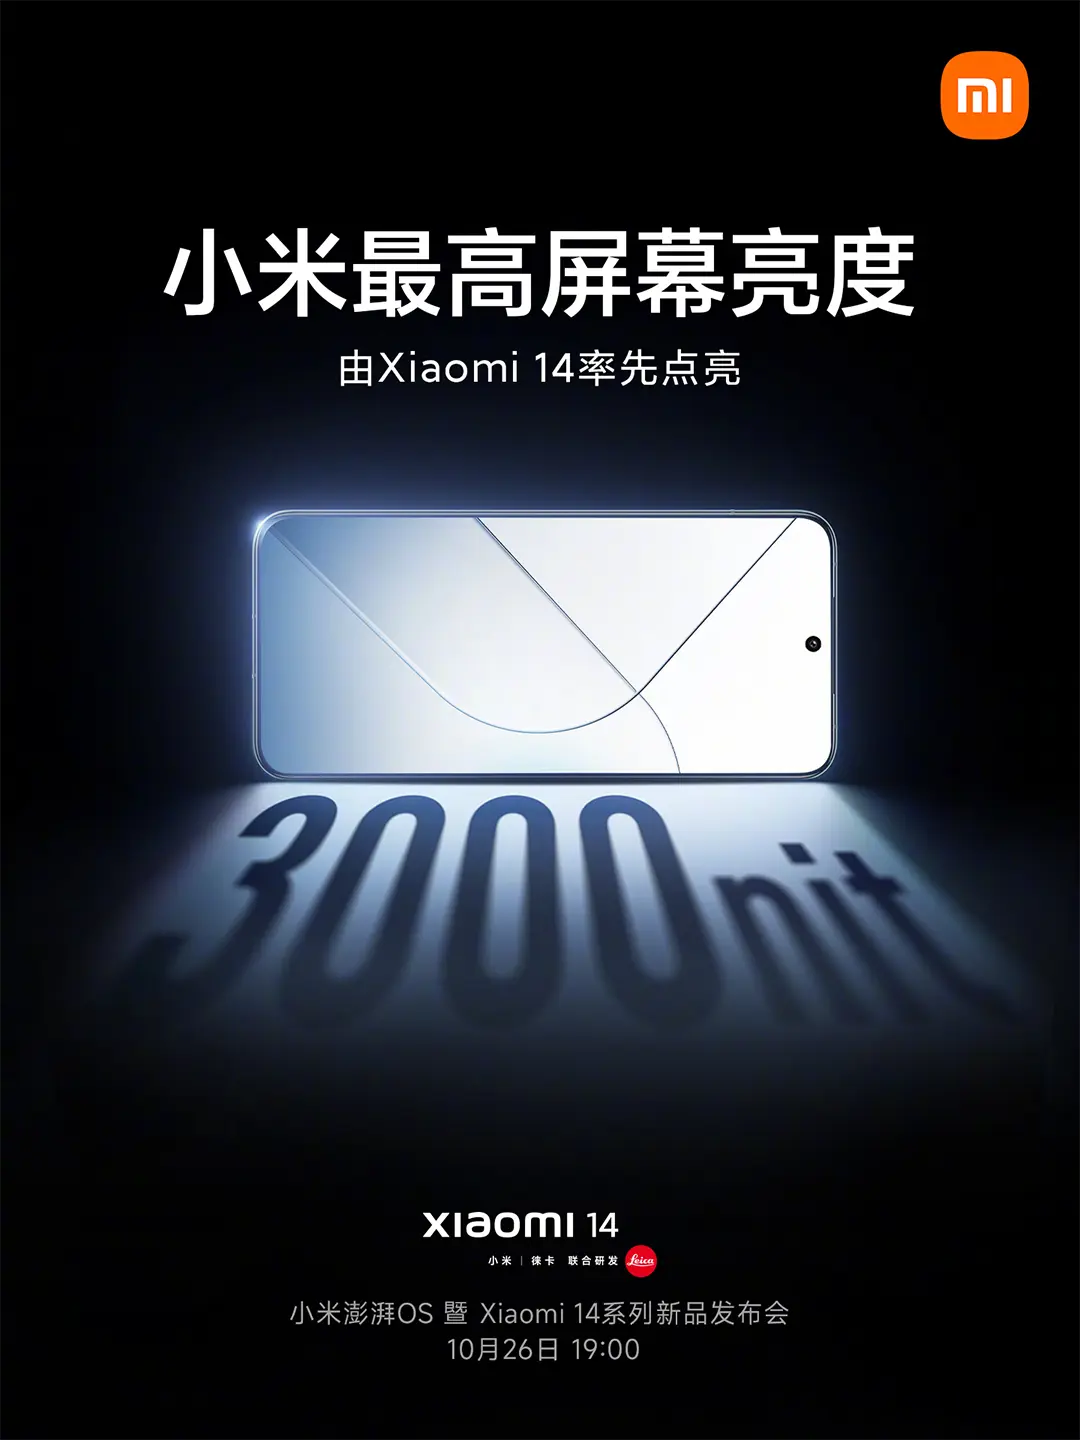 Xiaomi 14 képernyője: 1.5K + 460 PPI + 1-120 Hz LTPO